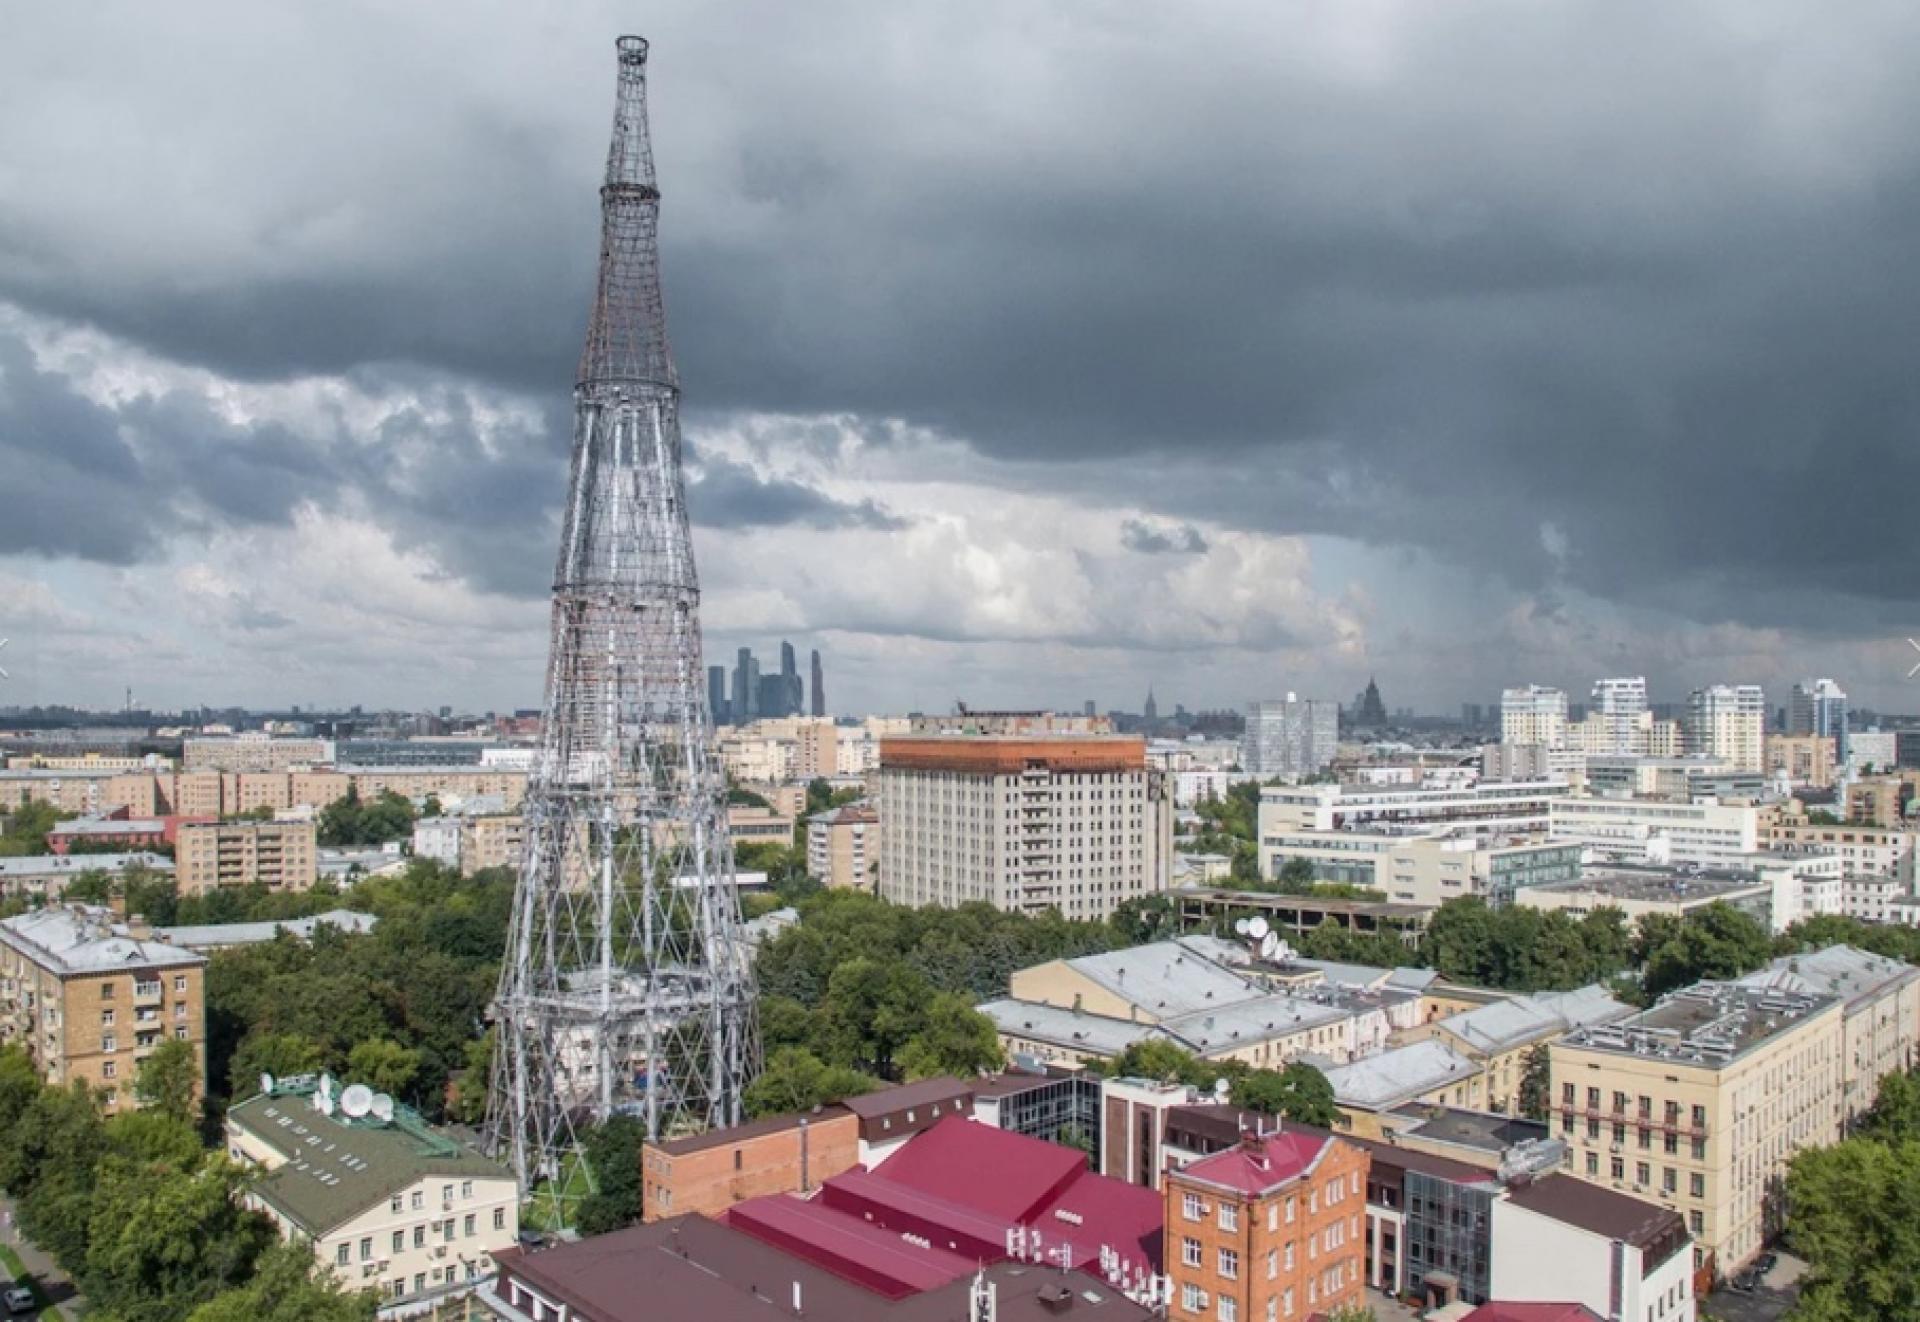 The Shukhov Radio Tower by Vladimir Shukhov, Moscow (1920-22).